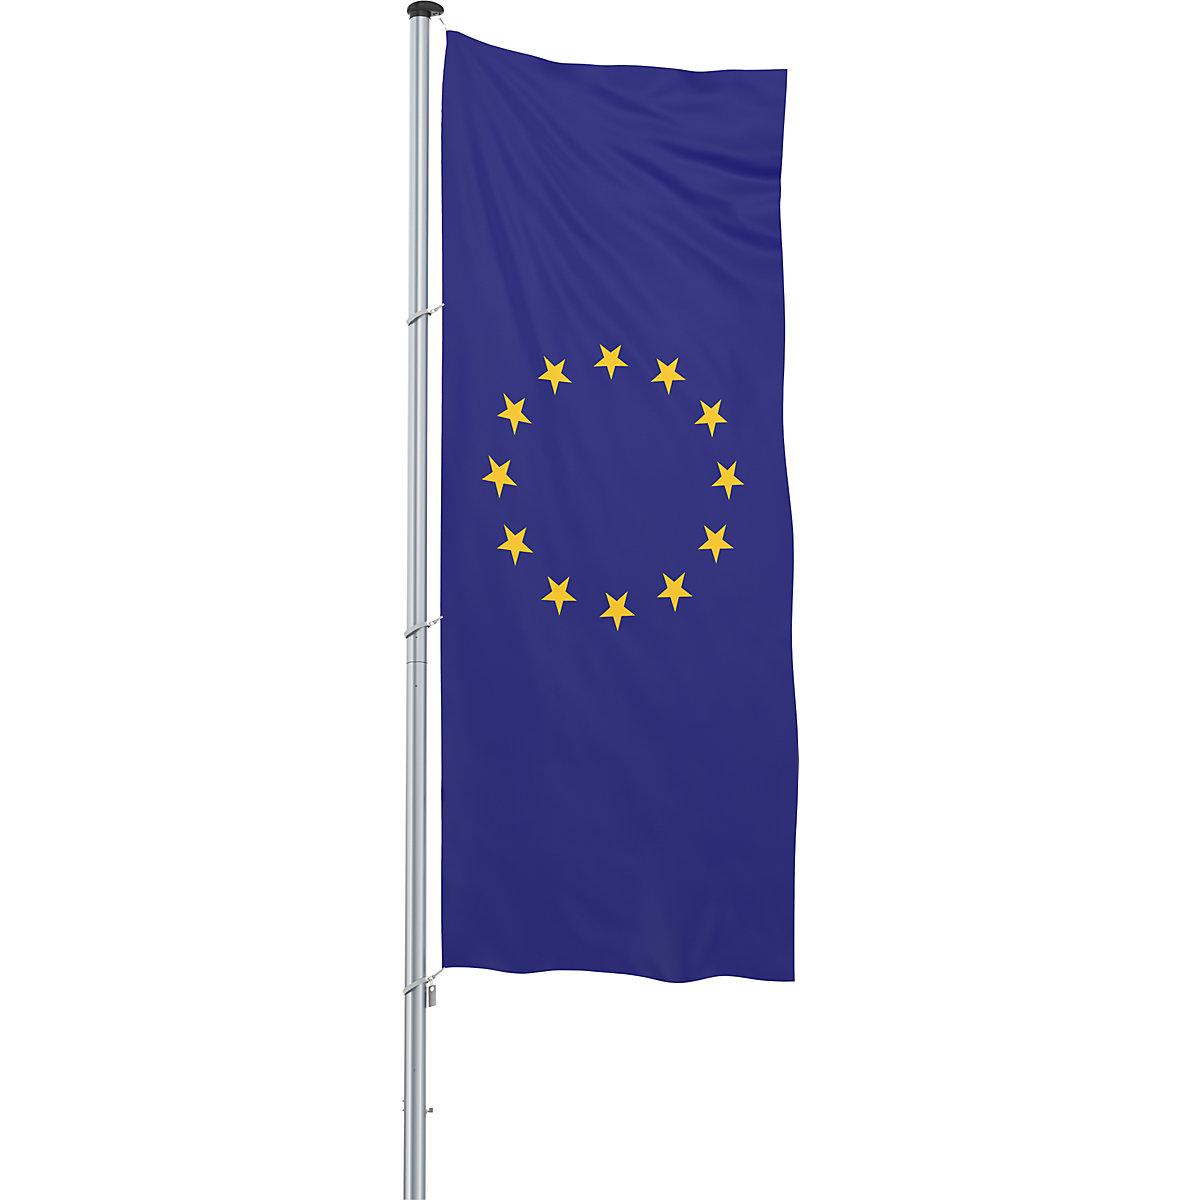 Vlajka pro vodorovné zavěšení/vlajka země – Mannus, formát 1,2 x 3 m, Evropská unie-24